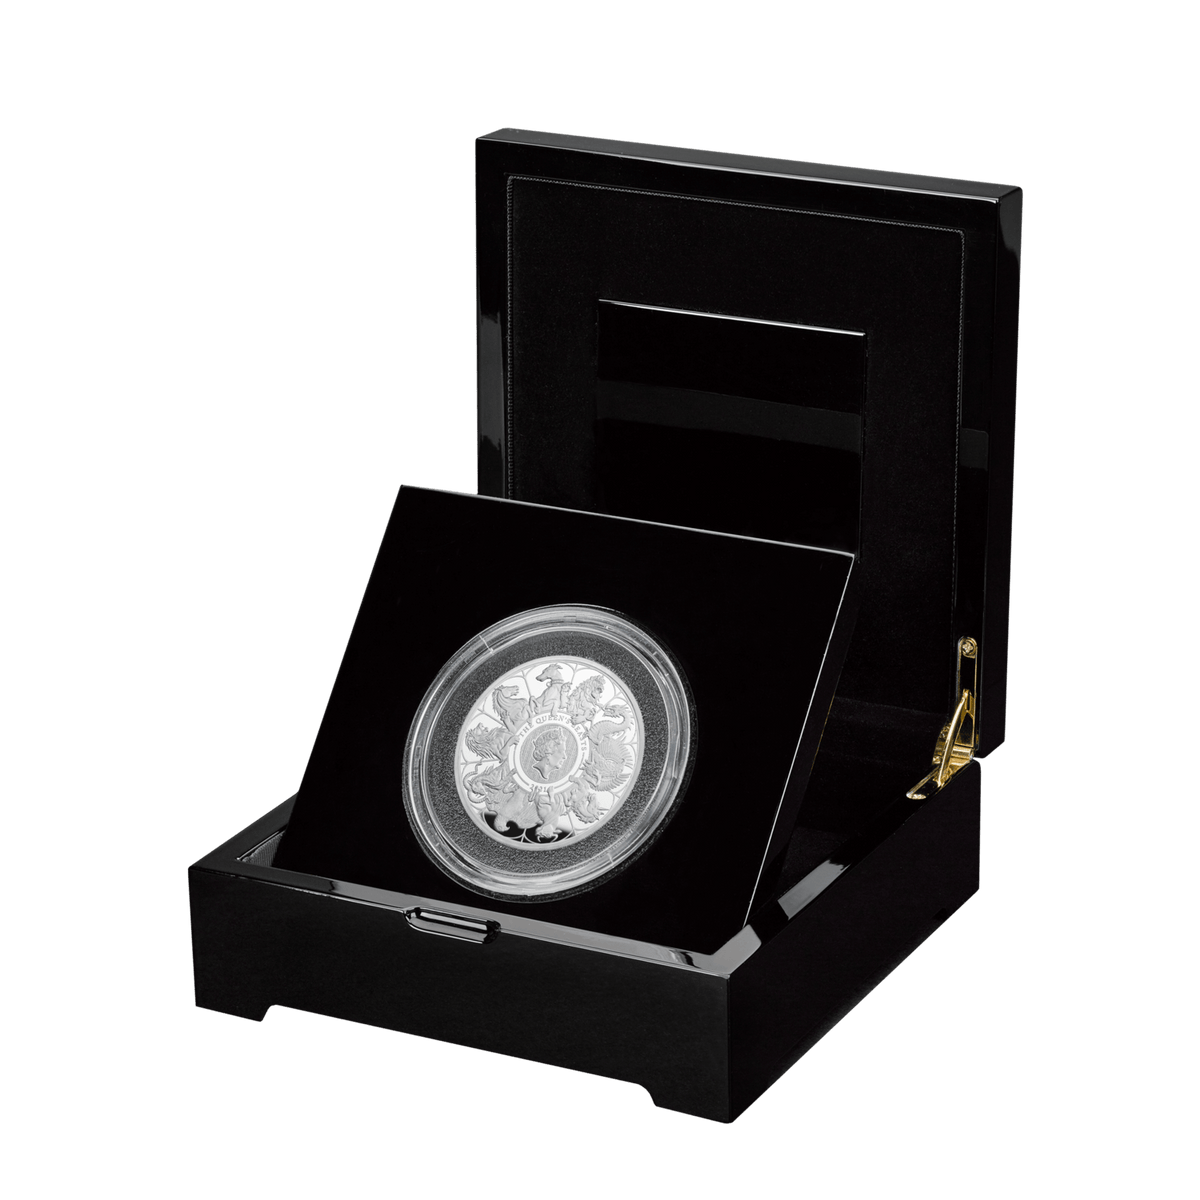 2021年 イギリス クイーンズビースト 1オンス 金貨 The Completer Coin | アンティークコインギャラリア